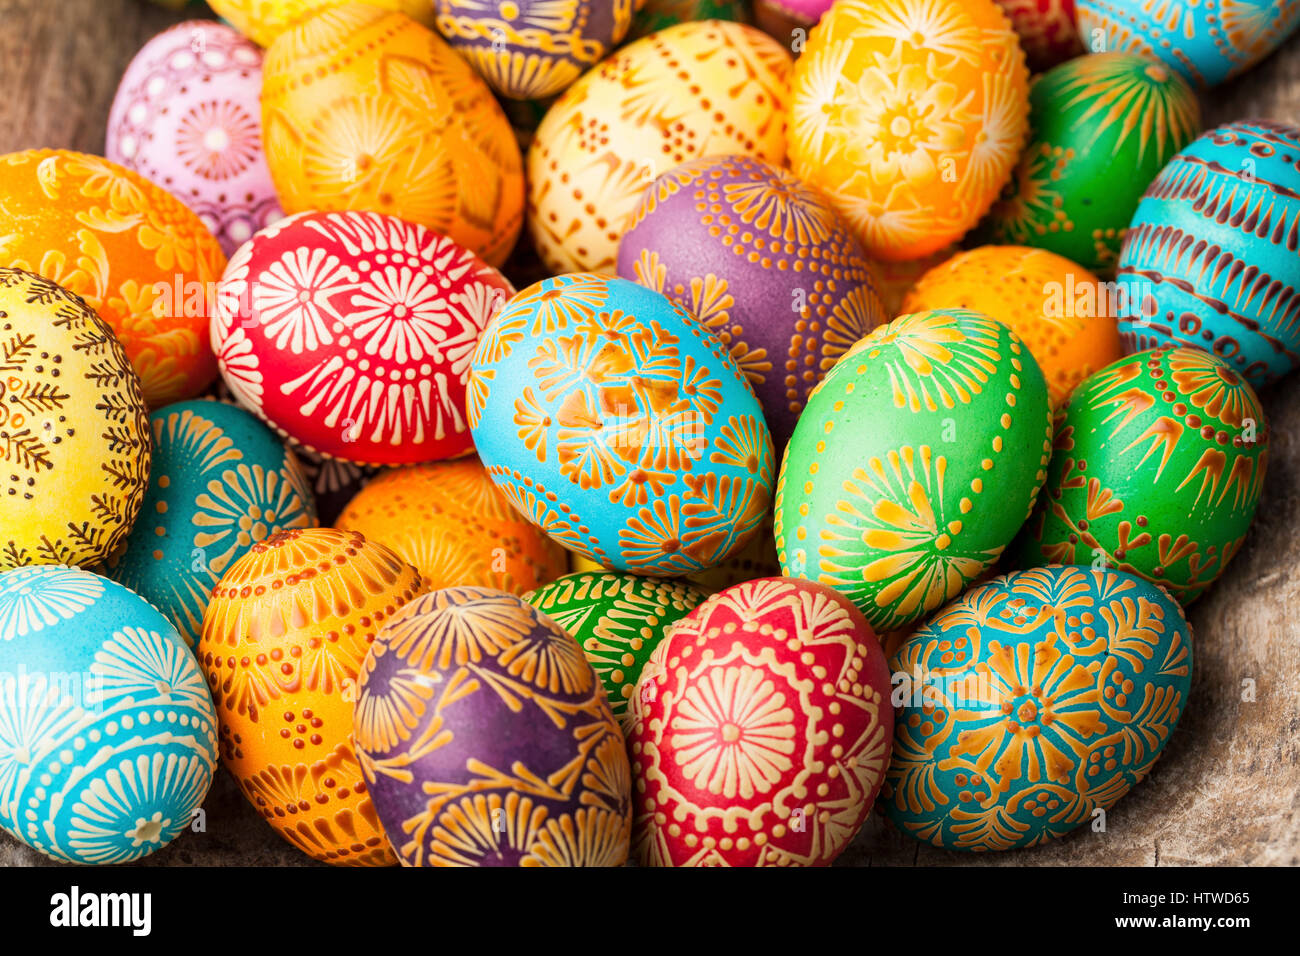 Les oeufs de Pâques, oeufs de Pâques, décoré avec de la cire d'abeille - pour célébrer Pâques. Sa vieille tradition en Lituanie, l'Europe de l'Est. Banque D'Images